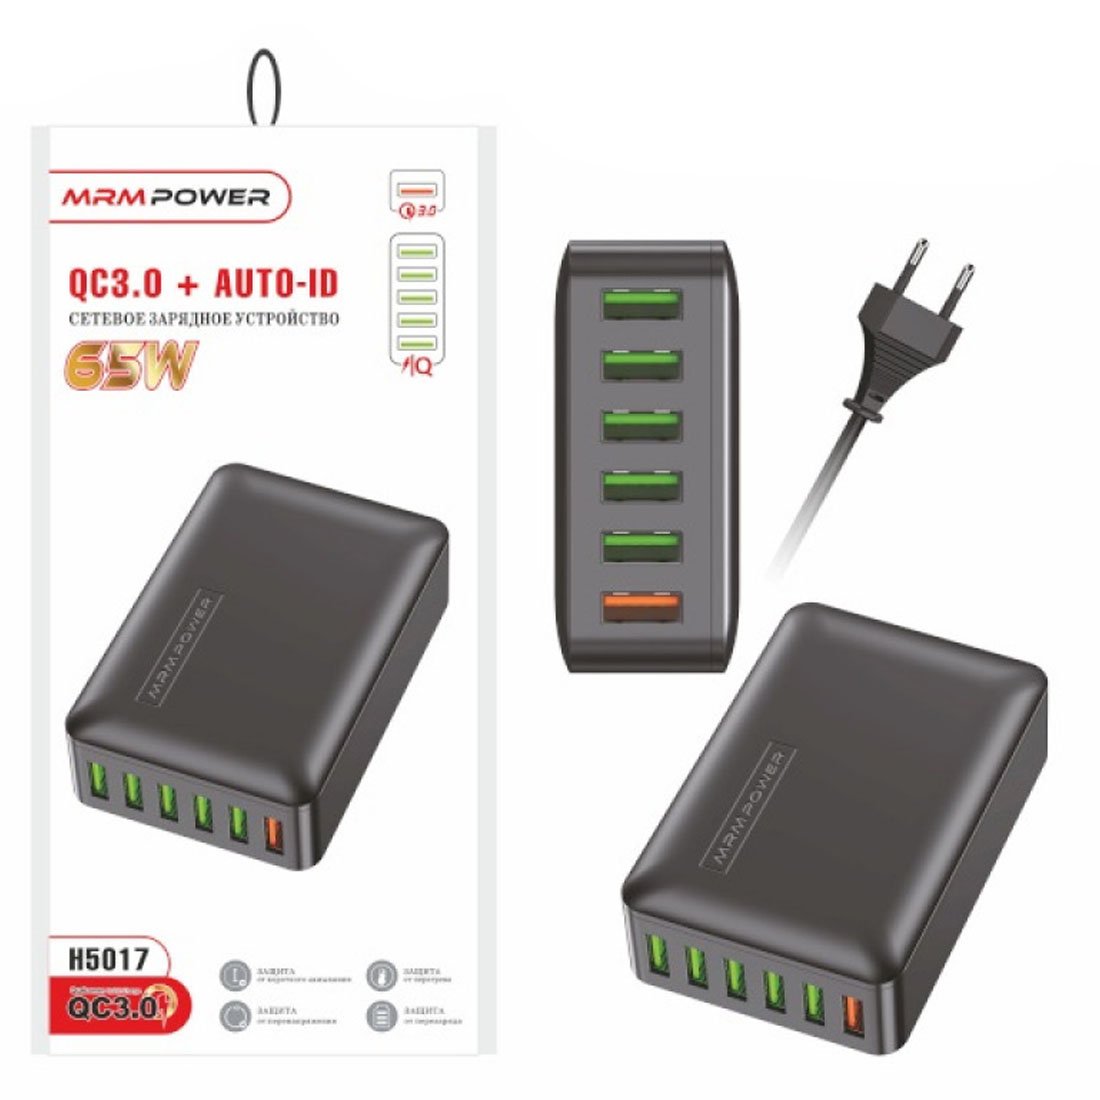 СЗУ (Сетевое зарядное устройство) MRM H5017, 65W, 6 USB, QC3.0, цвет черный